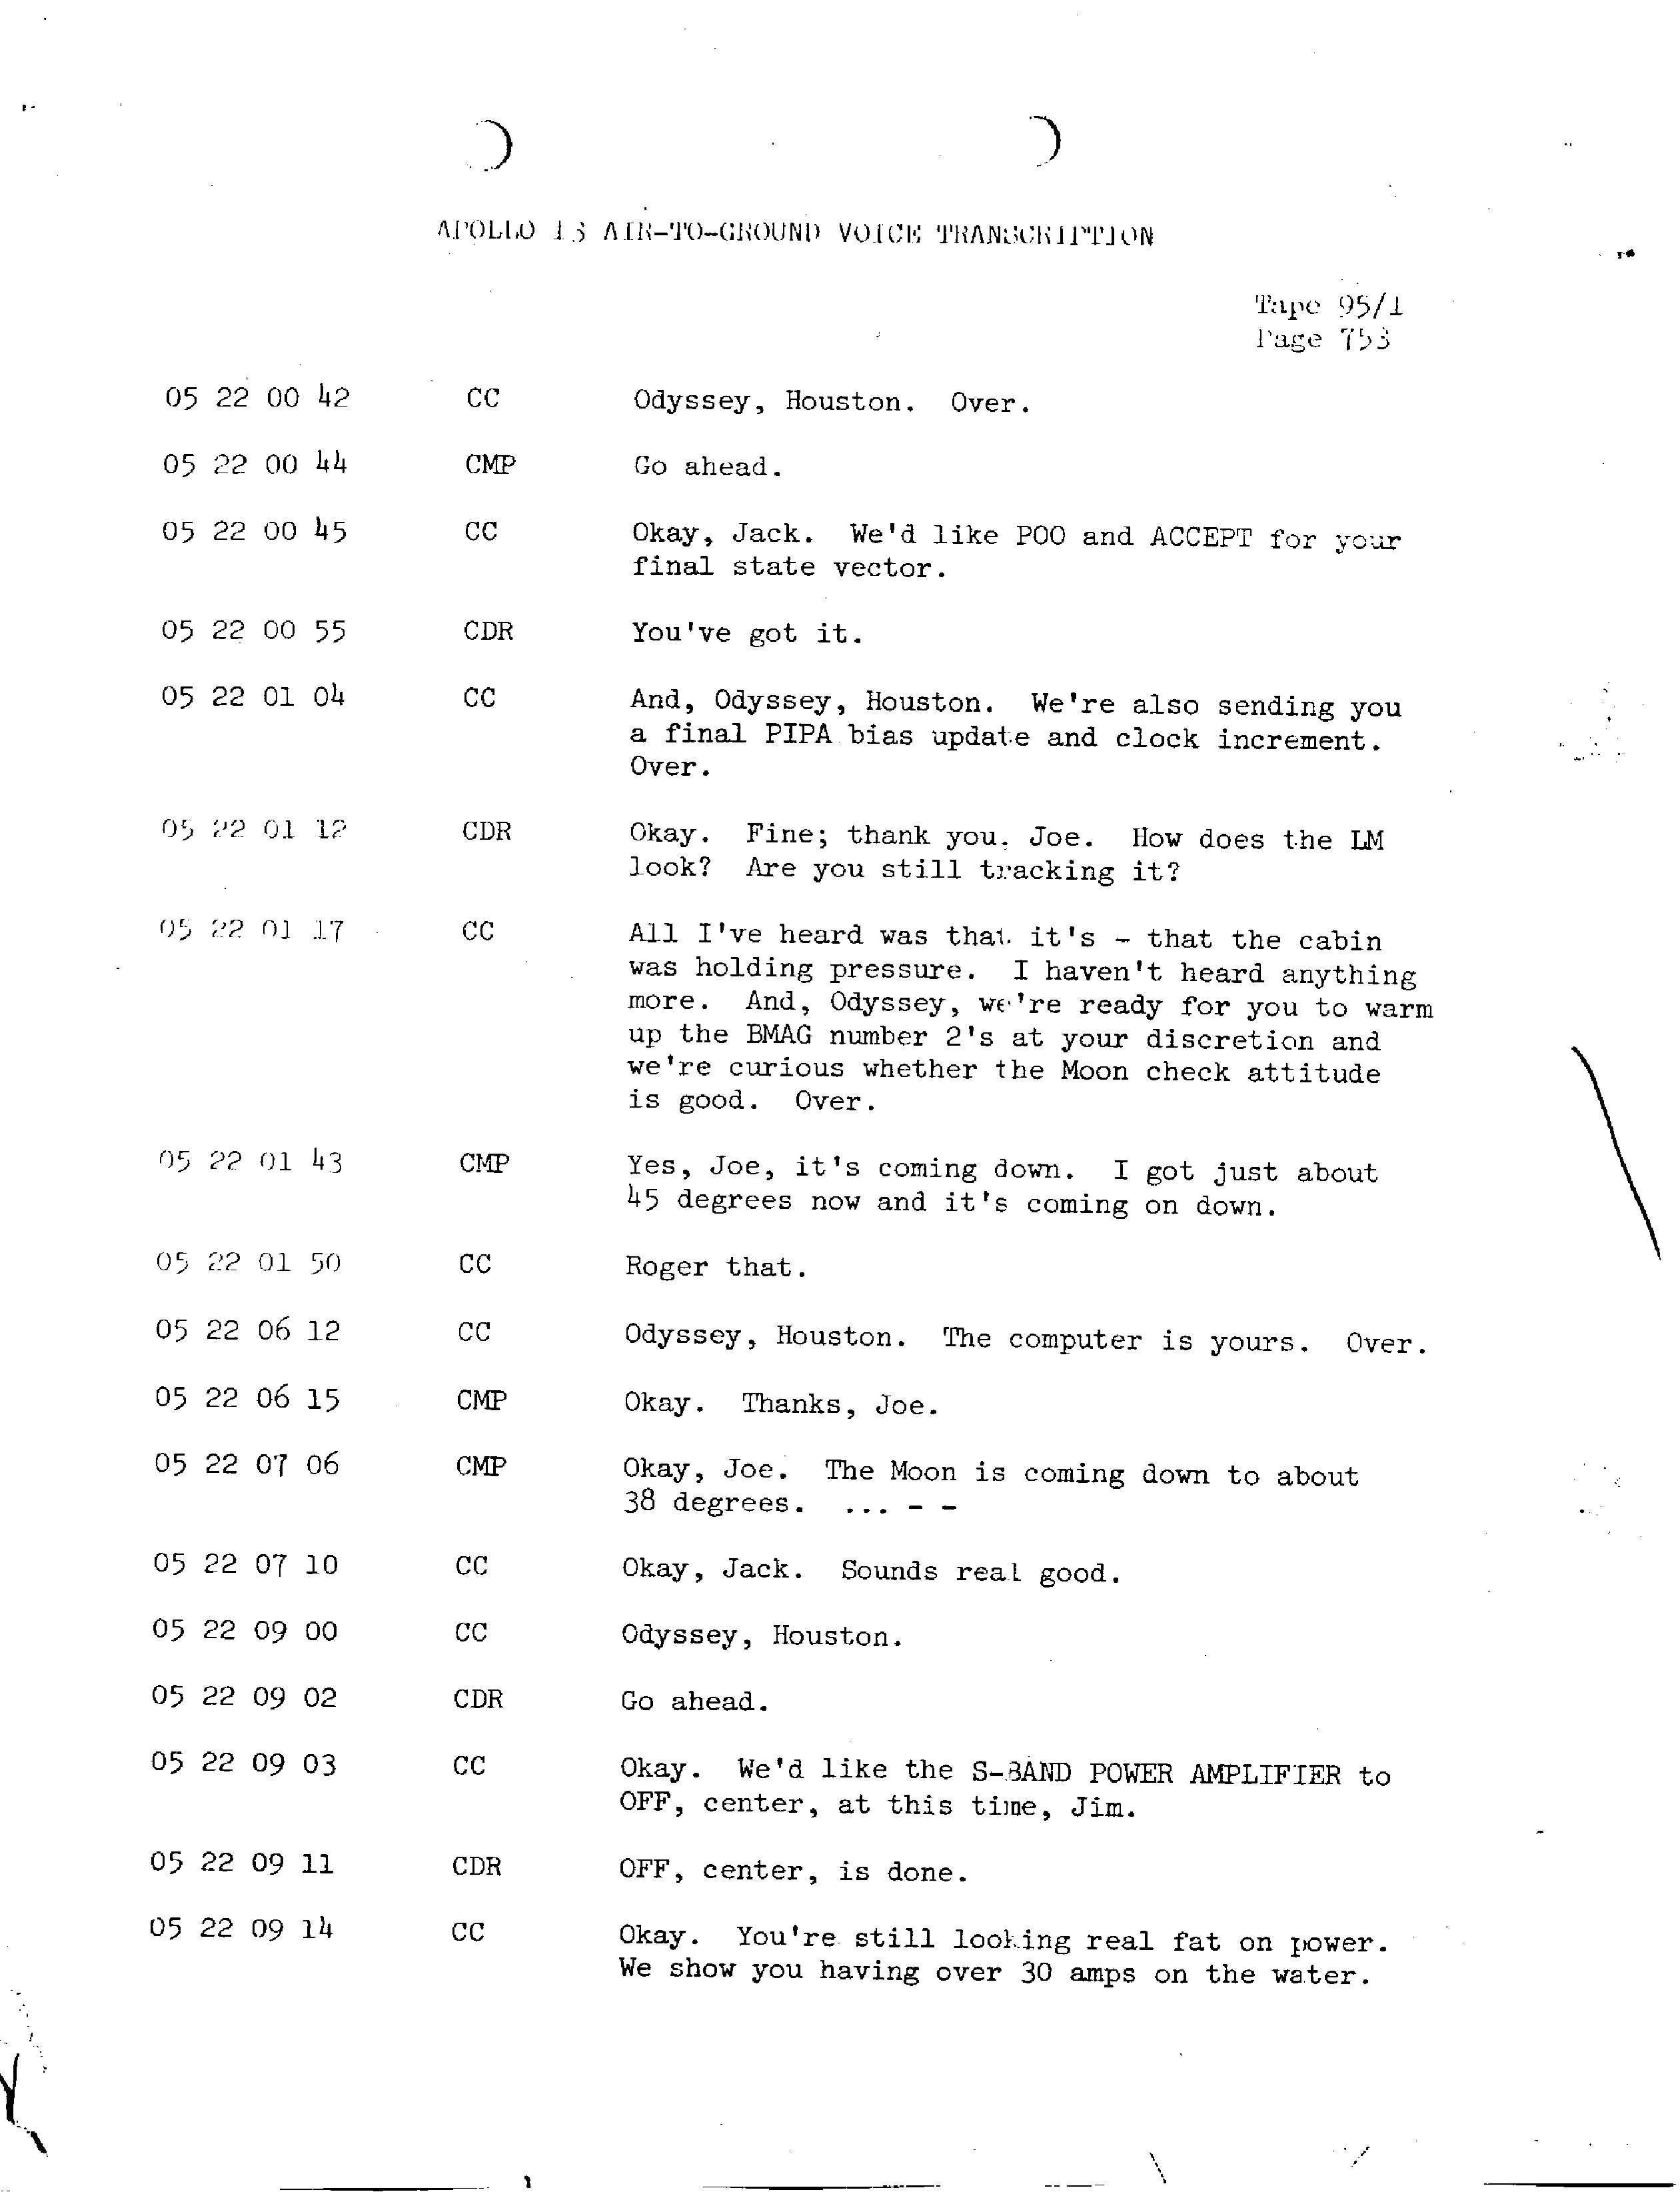 Page 760 of Apollo 13’s original transcript